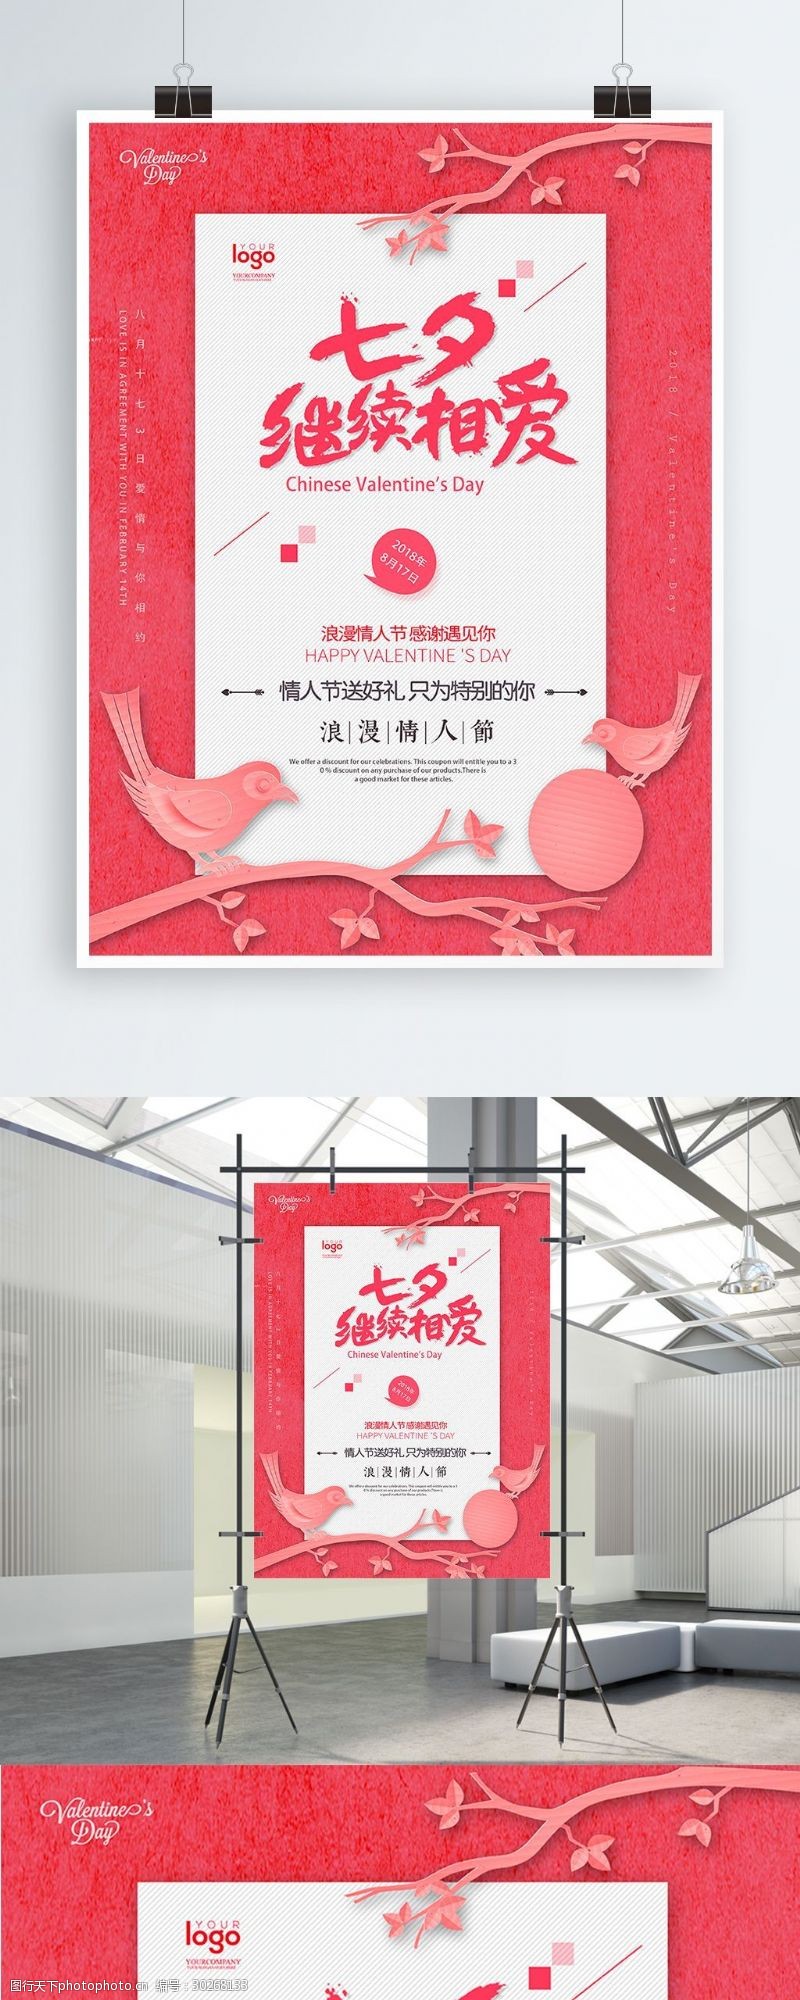 文字排版粉红色成对枝头喜鹊浪漫七夕节日海报设计